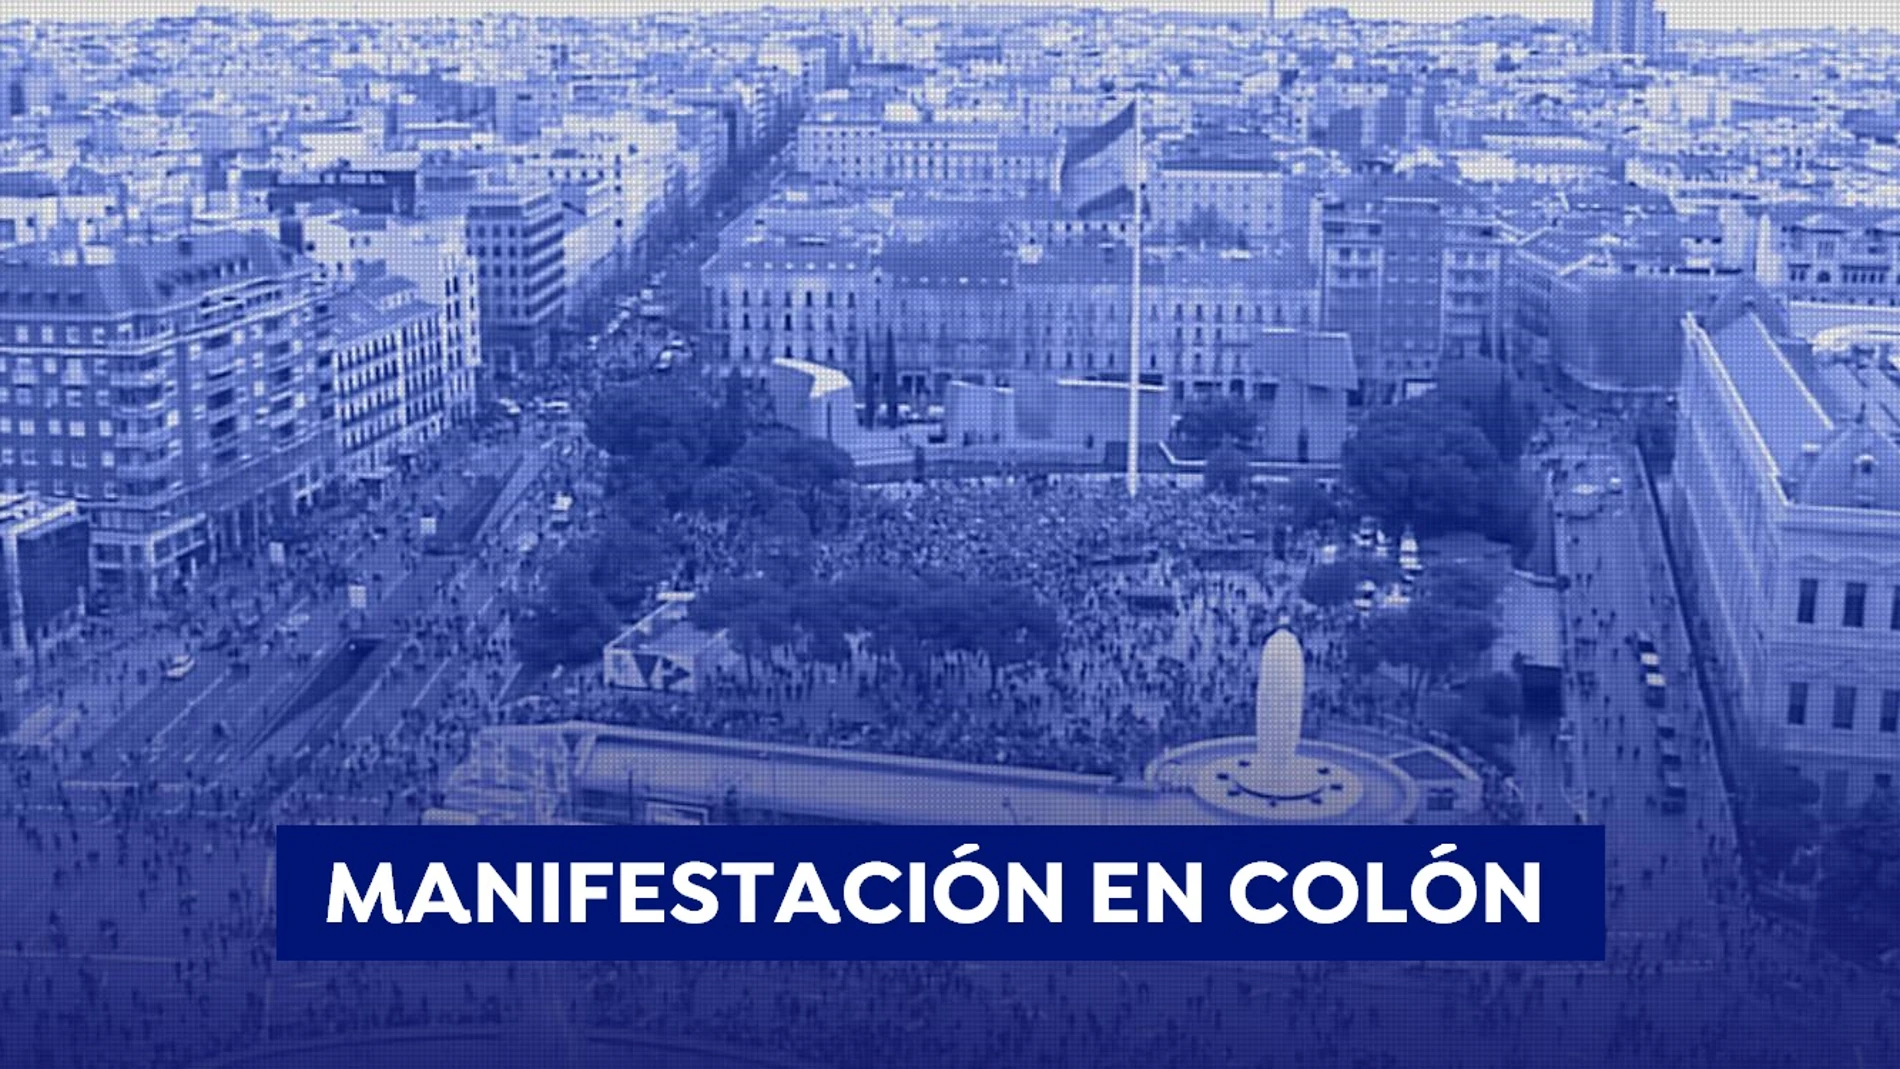 Este es el recorrido de la manifestación de Colón el 13 de junio